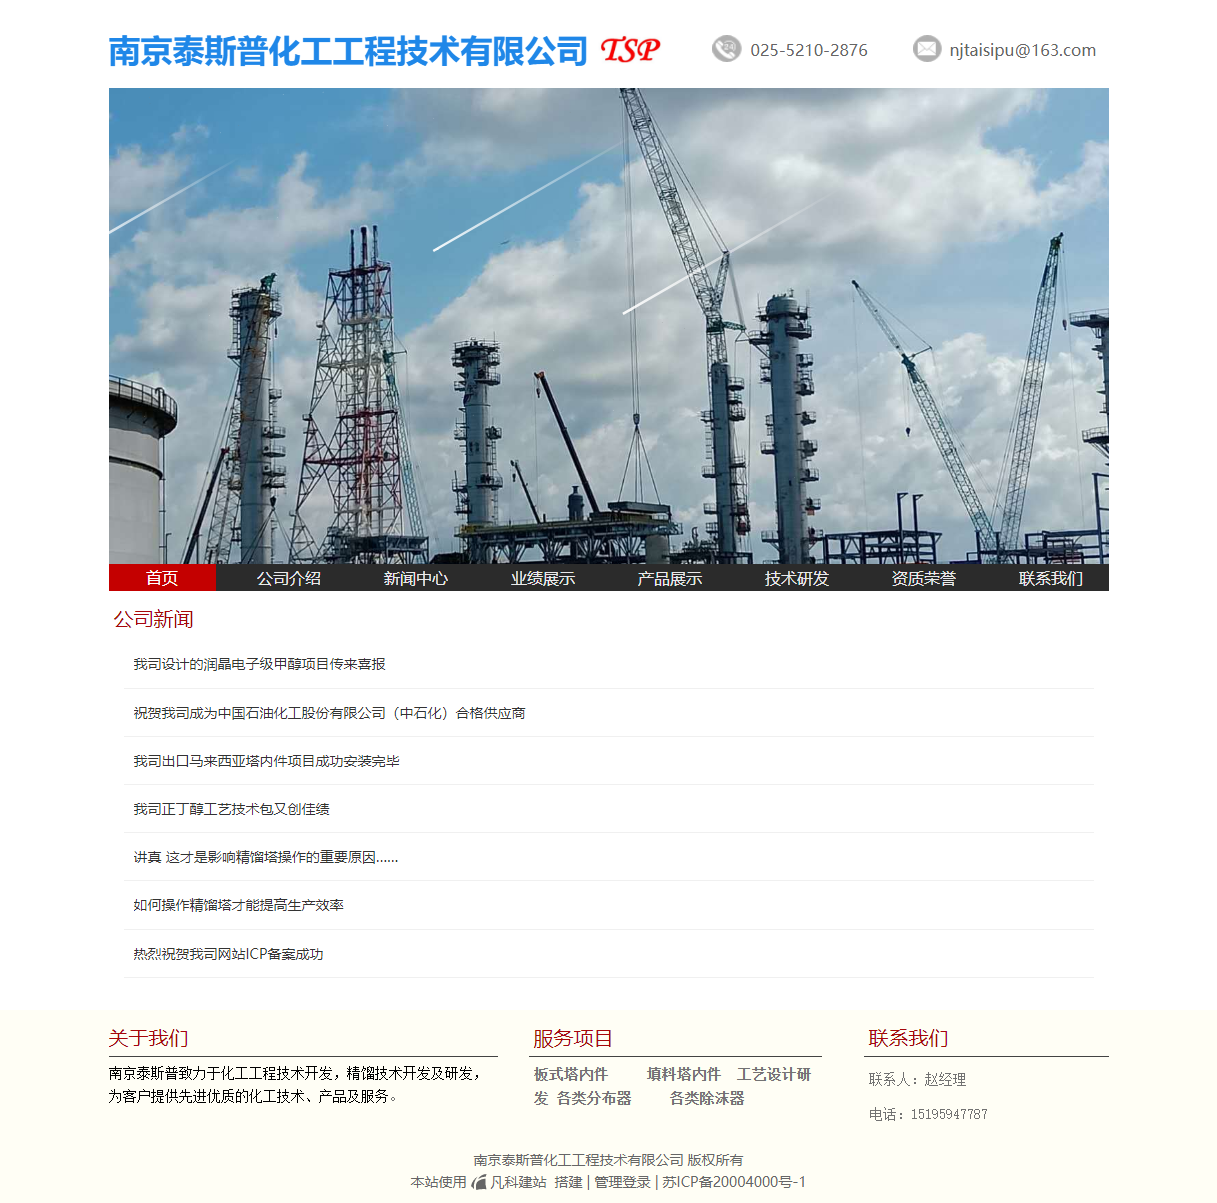 南京泰斯普化工工程技术有限公司网站案例